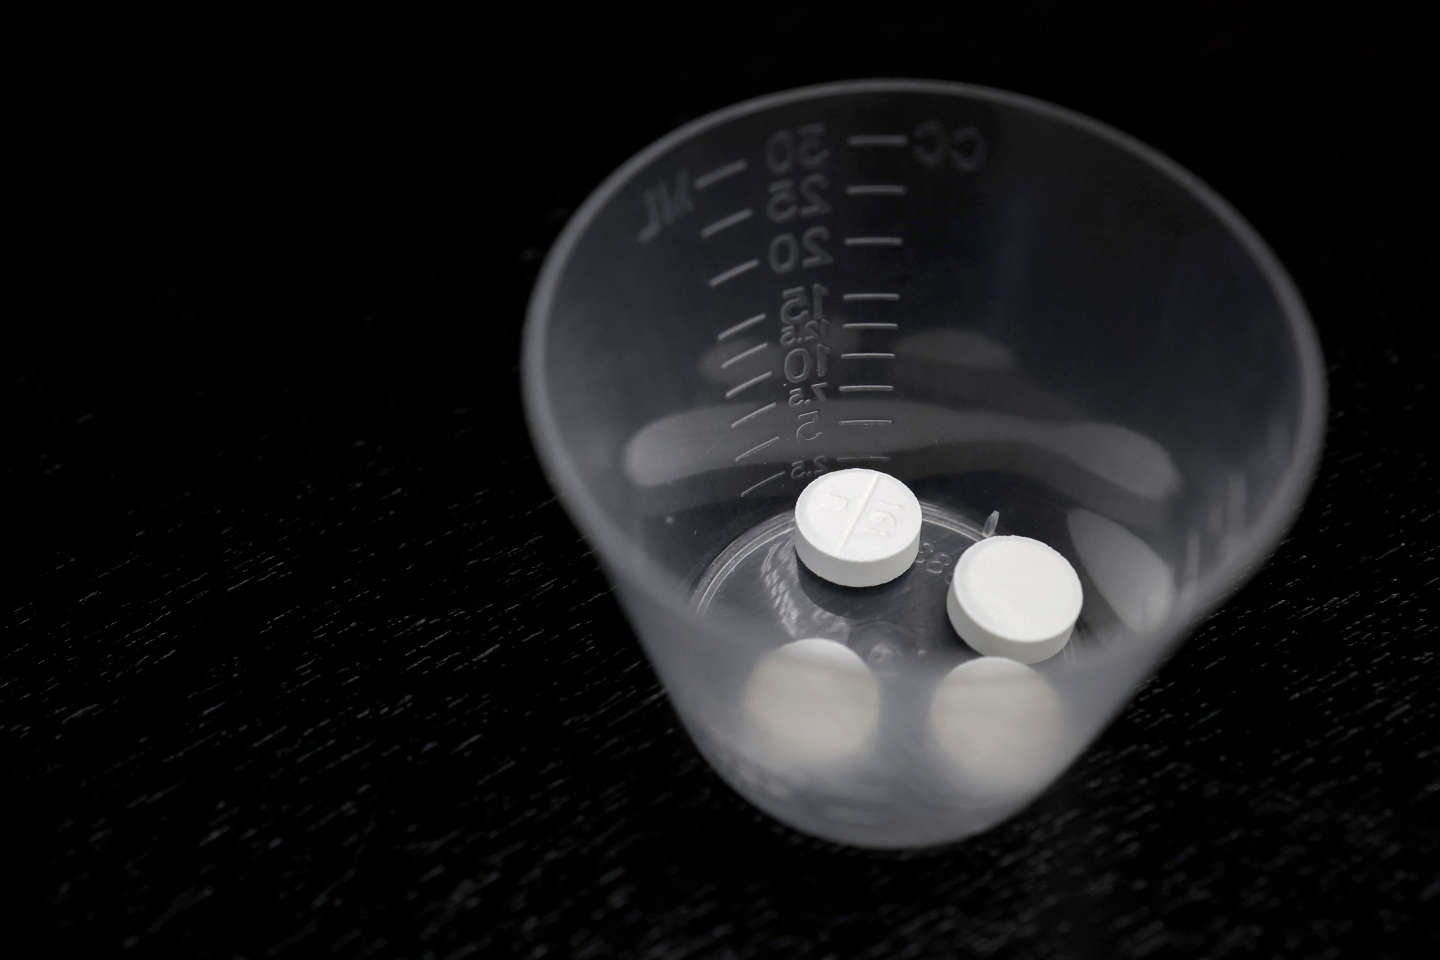 Pilule abortive : selon le laboratoire Nordic Pharma, « il n’y a pas à craindre de pénurie »